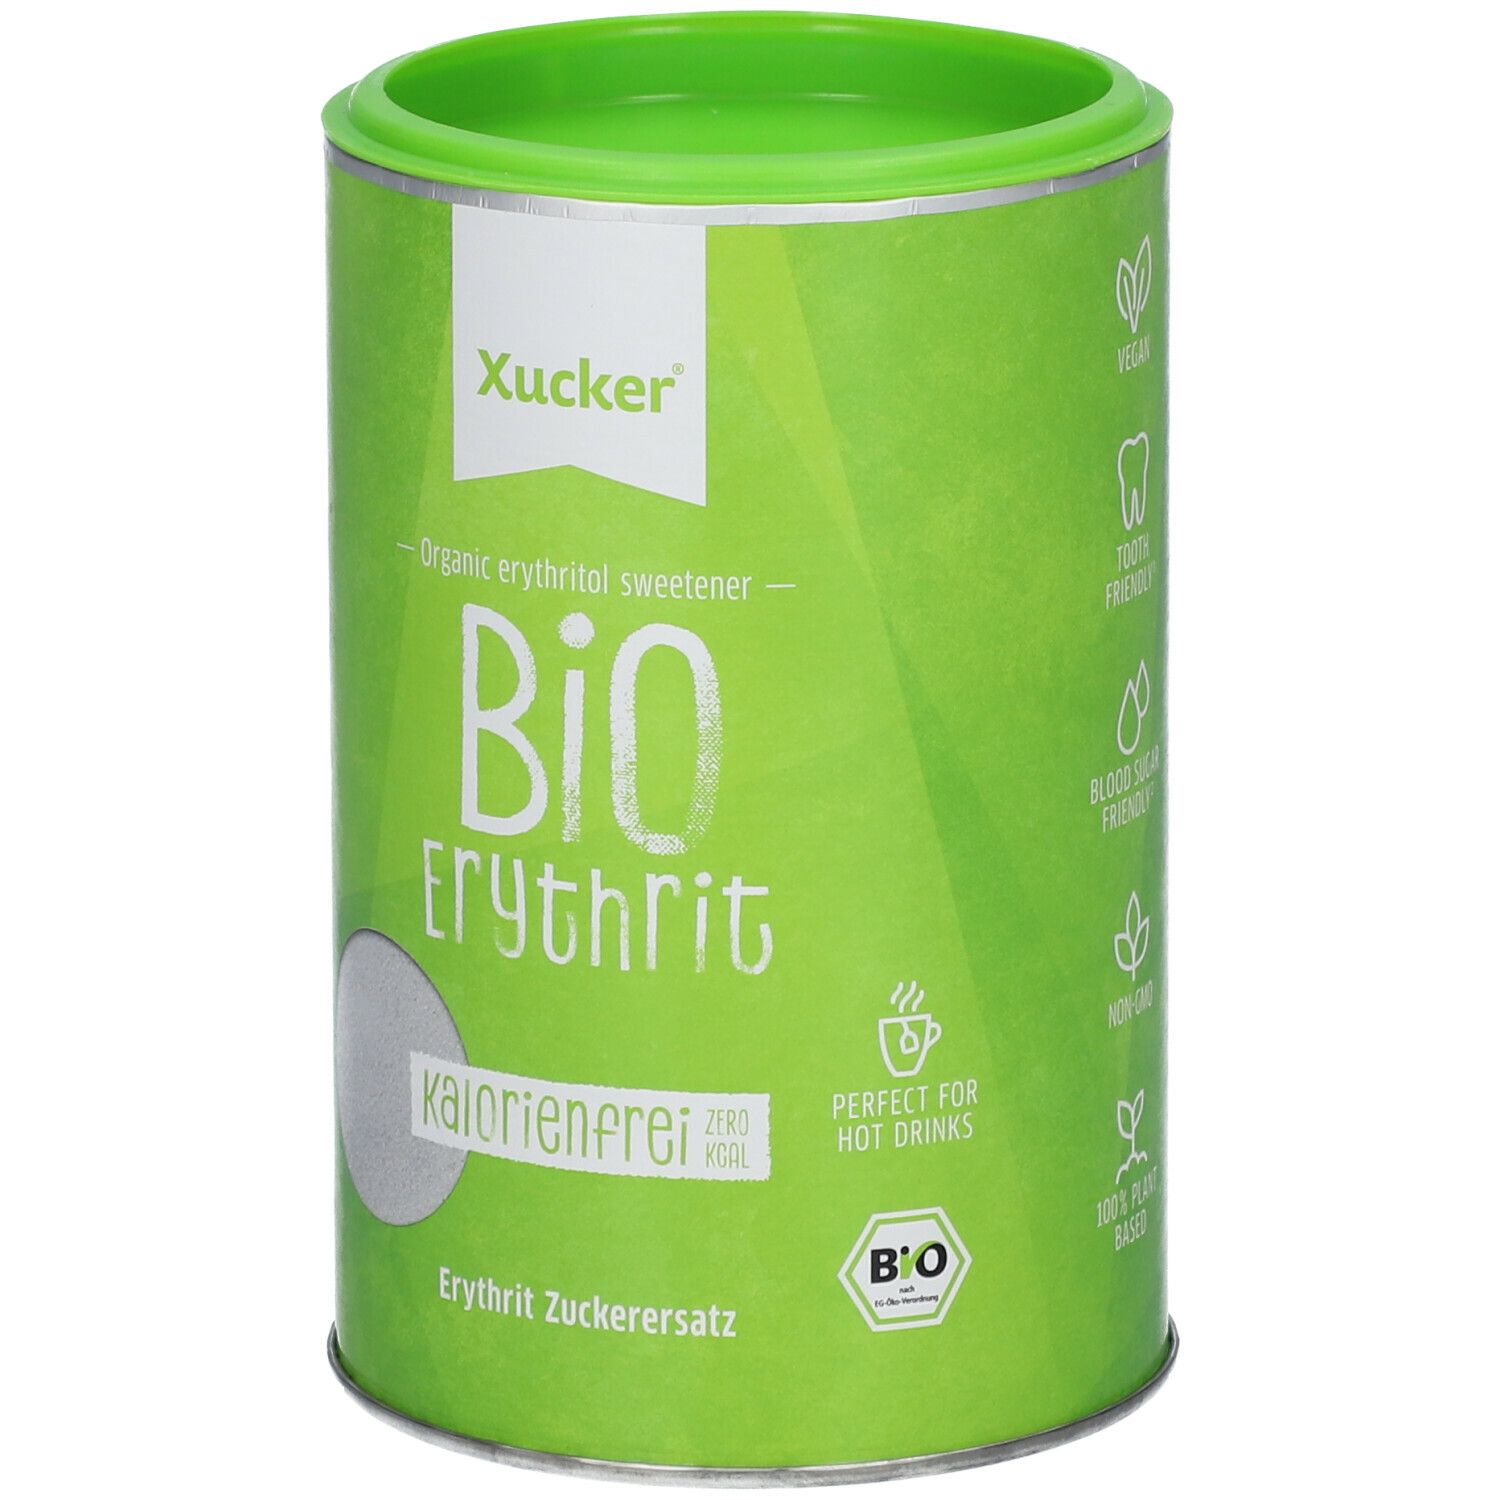 Xucker® Bio Light